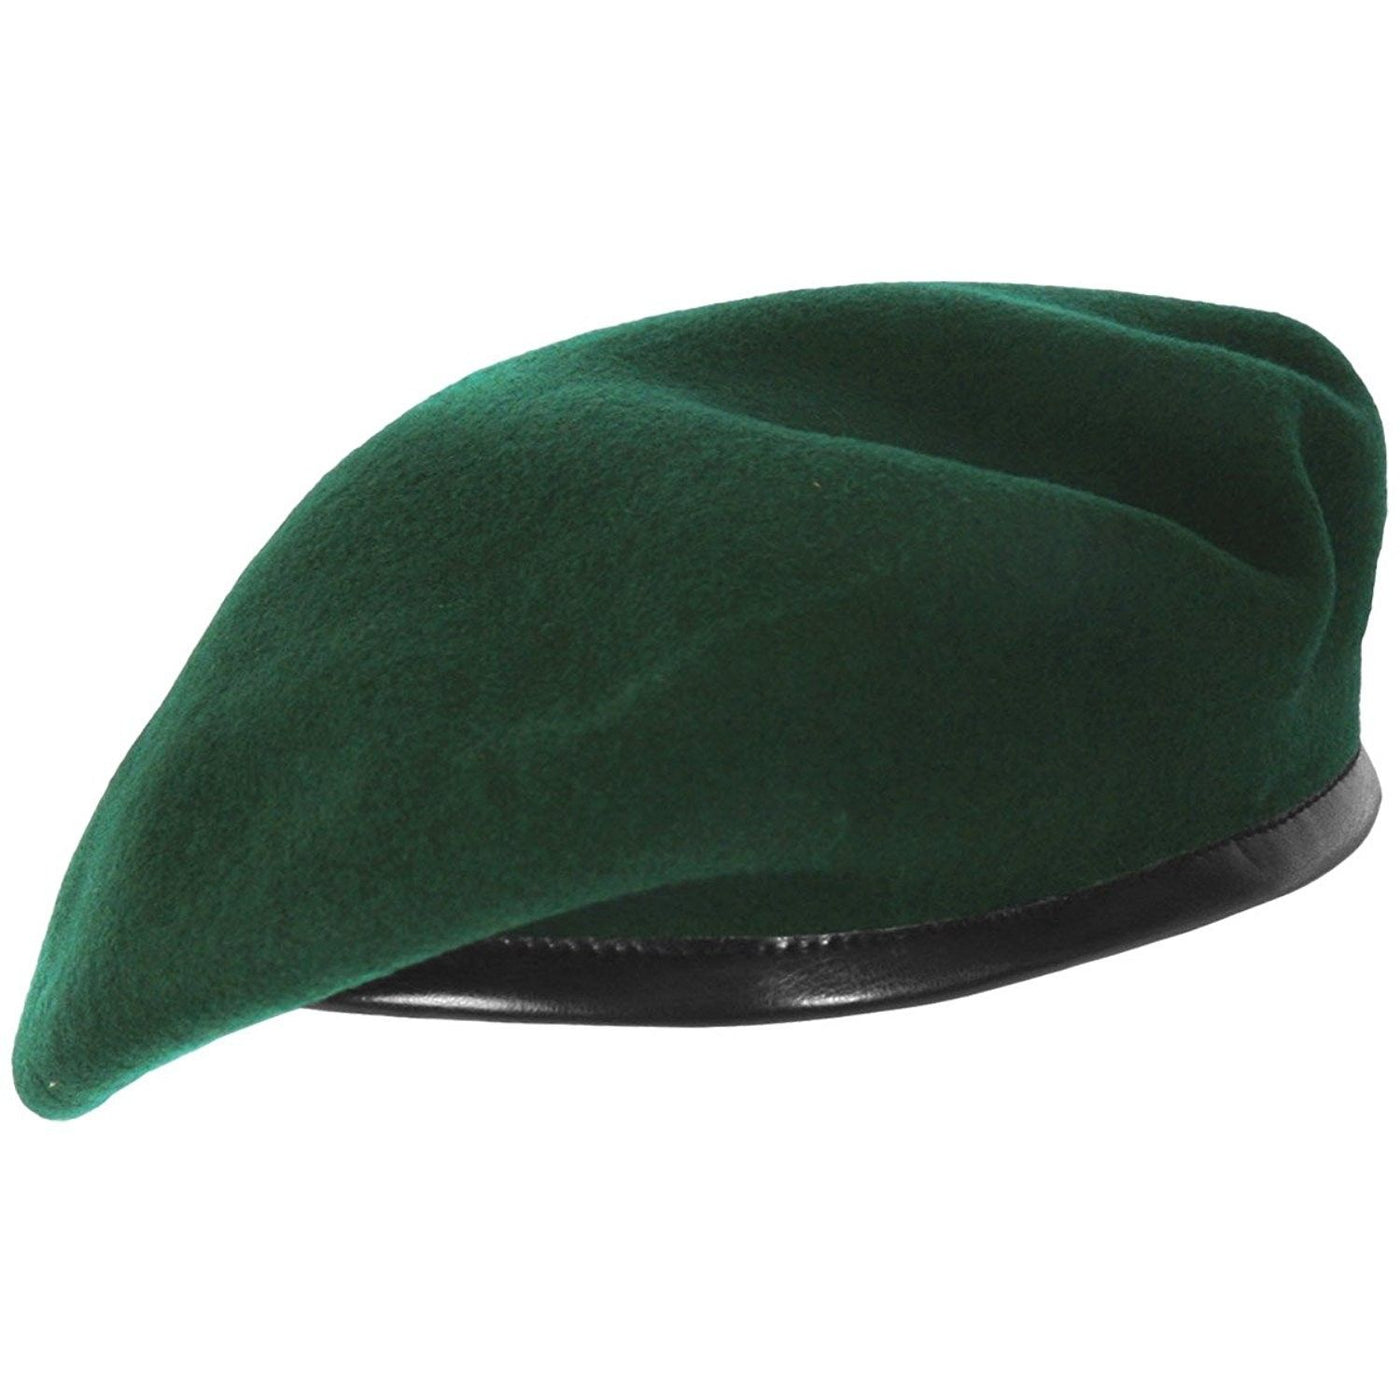 Beret Cap - Green